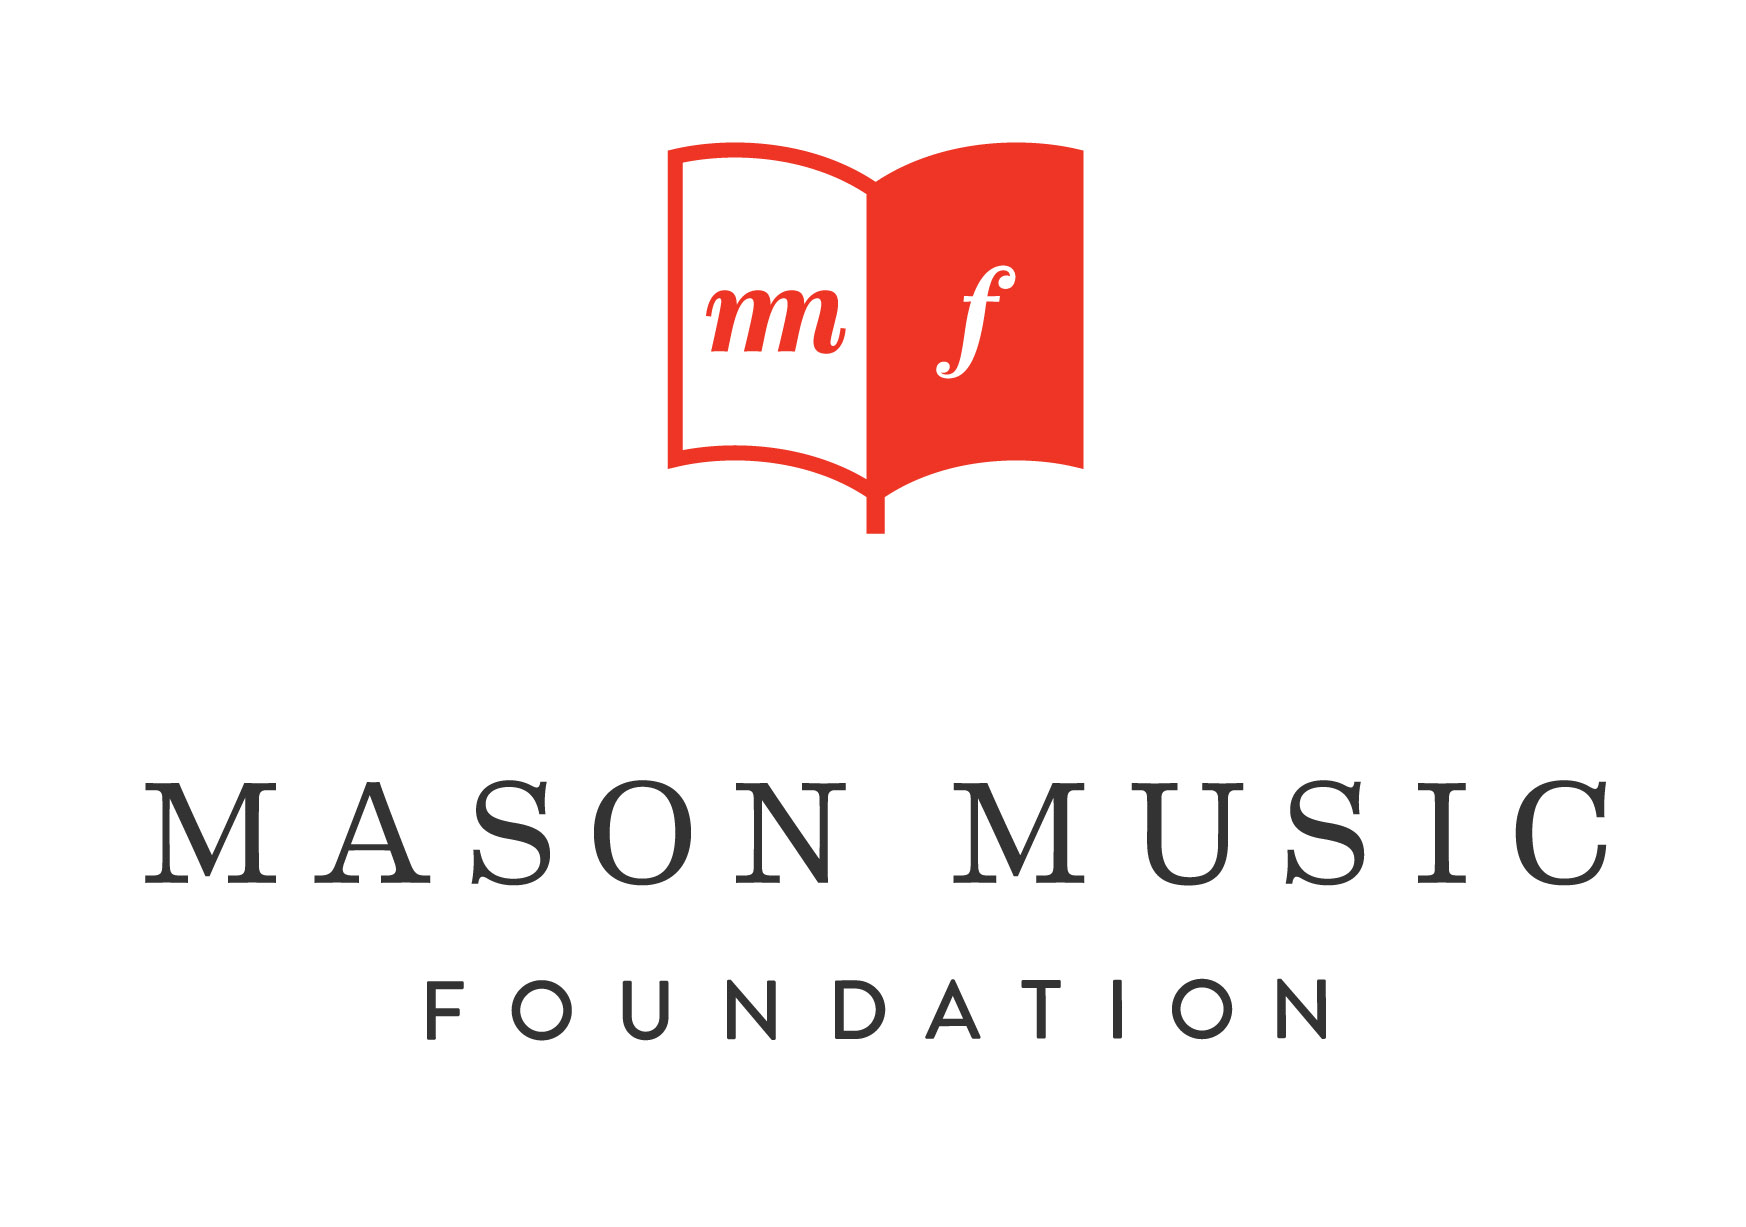 Mason Music Foundation logo